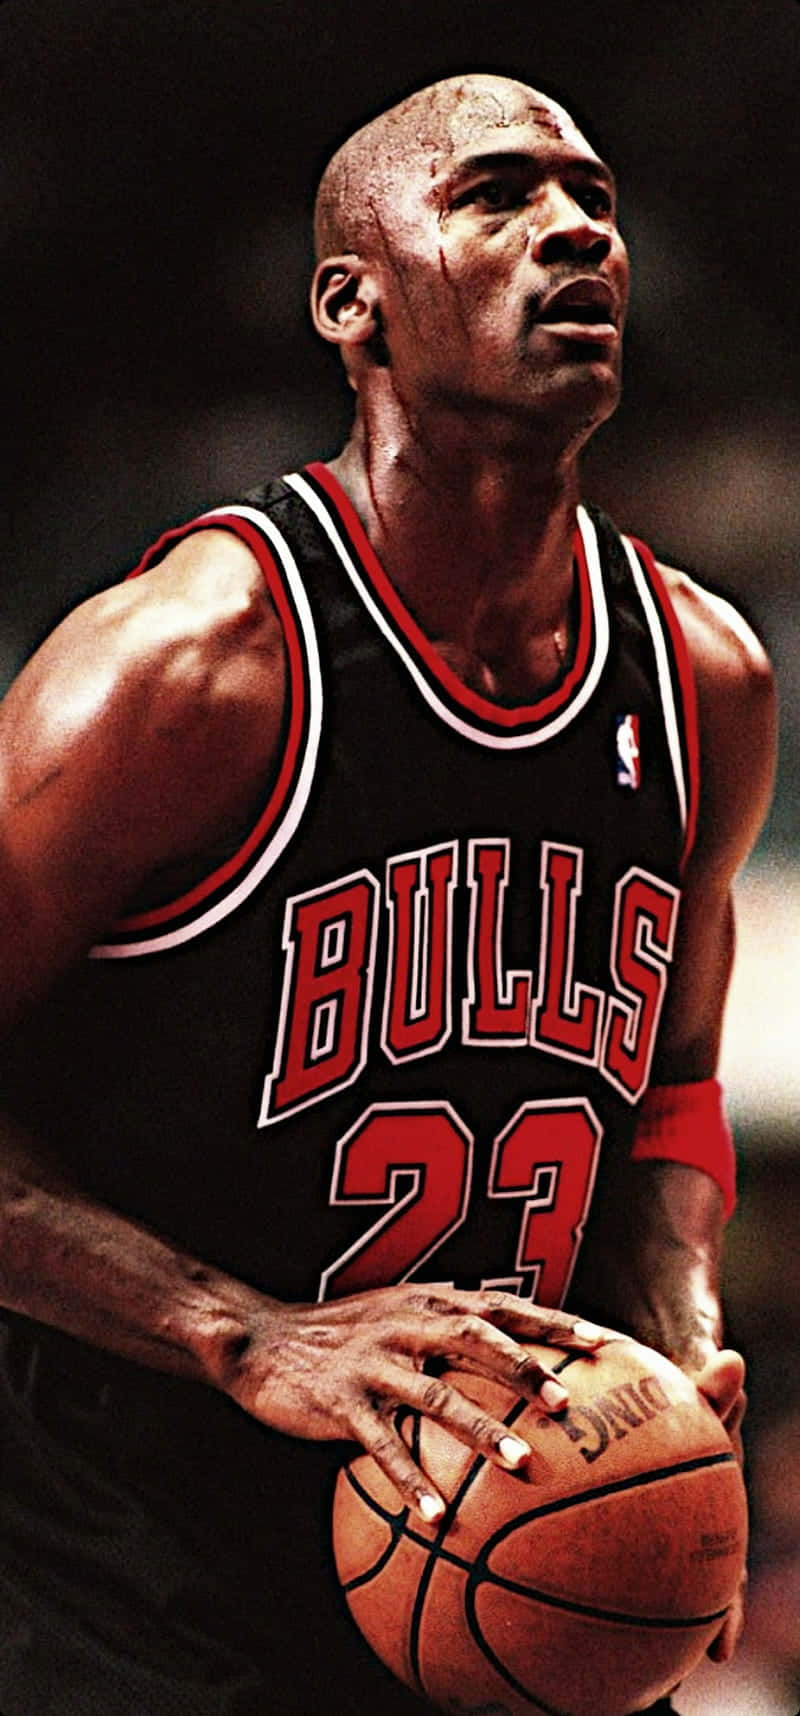 Michael Jordan, den 'GOAT' af basketball. Wallpaper